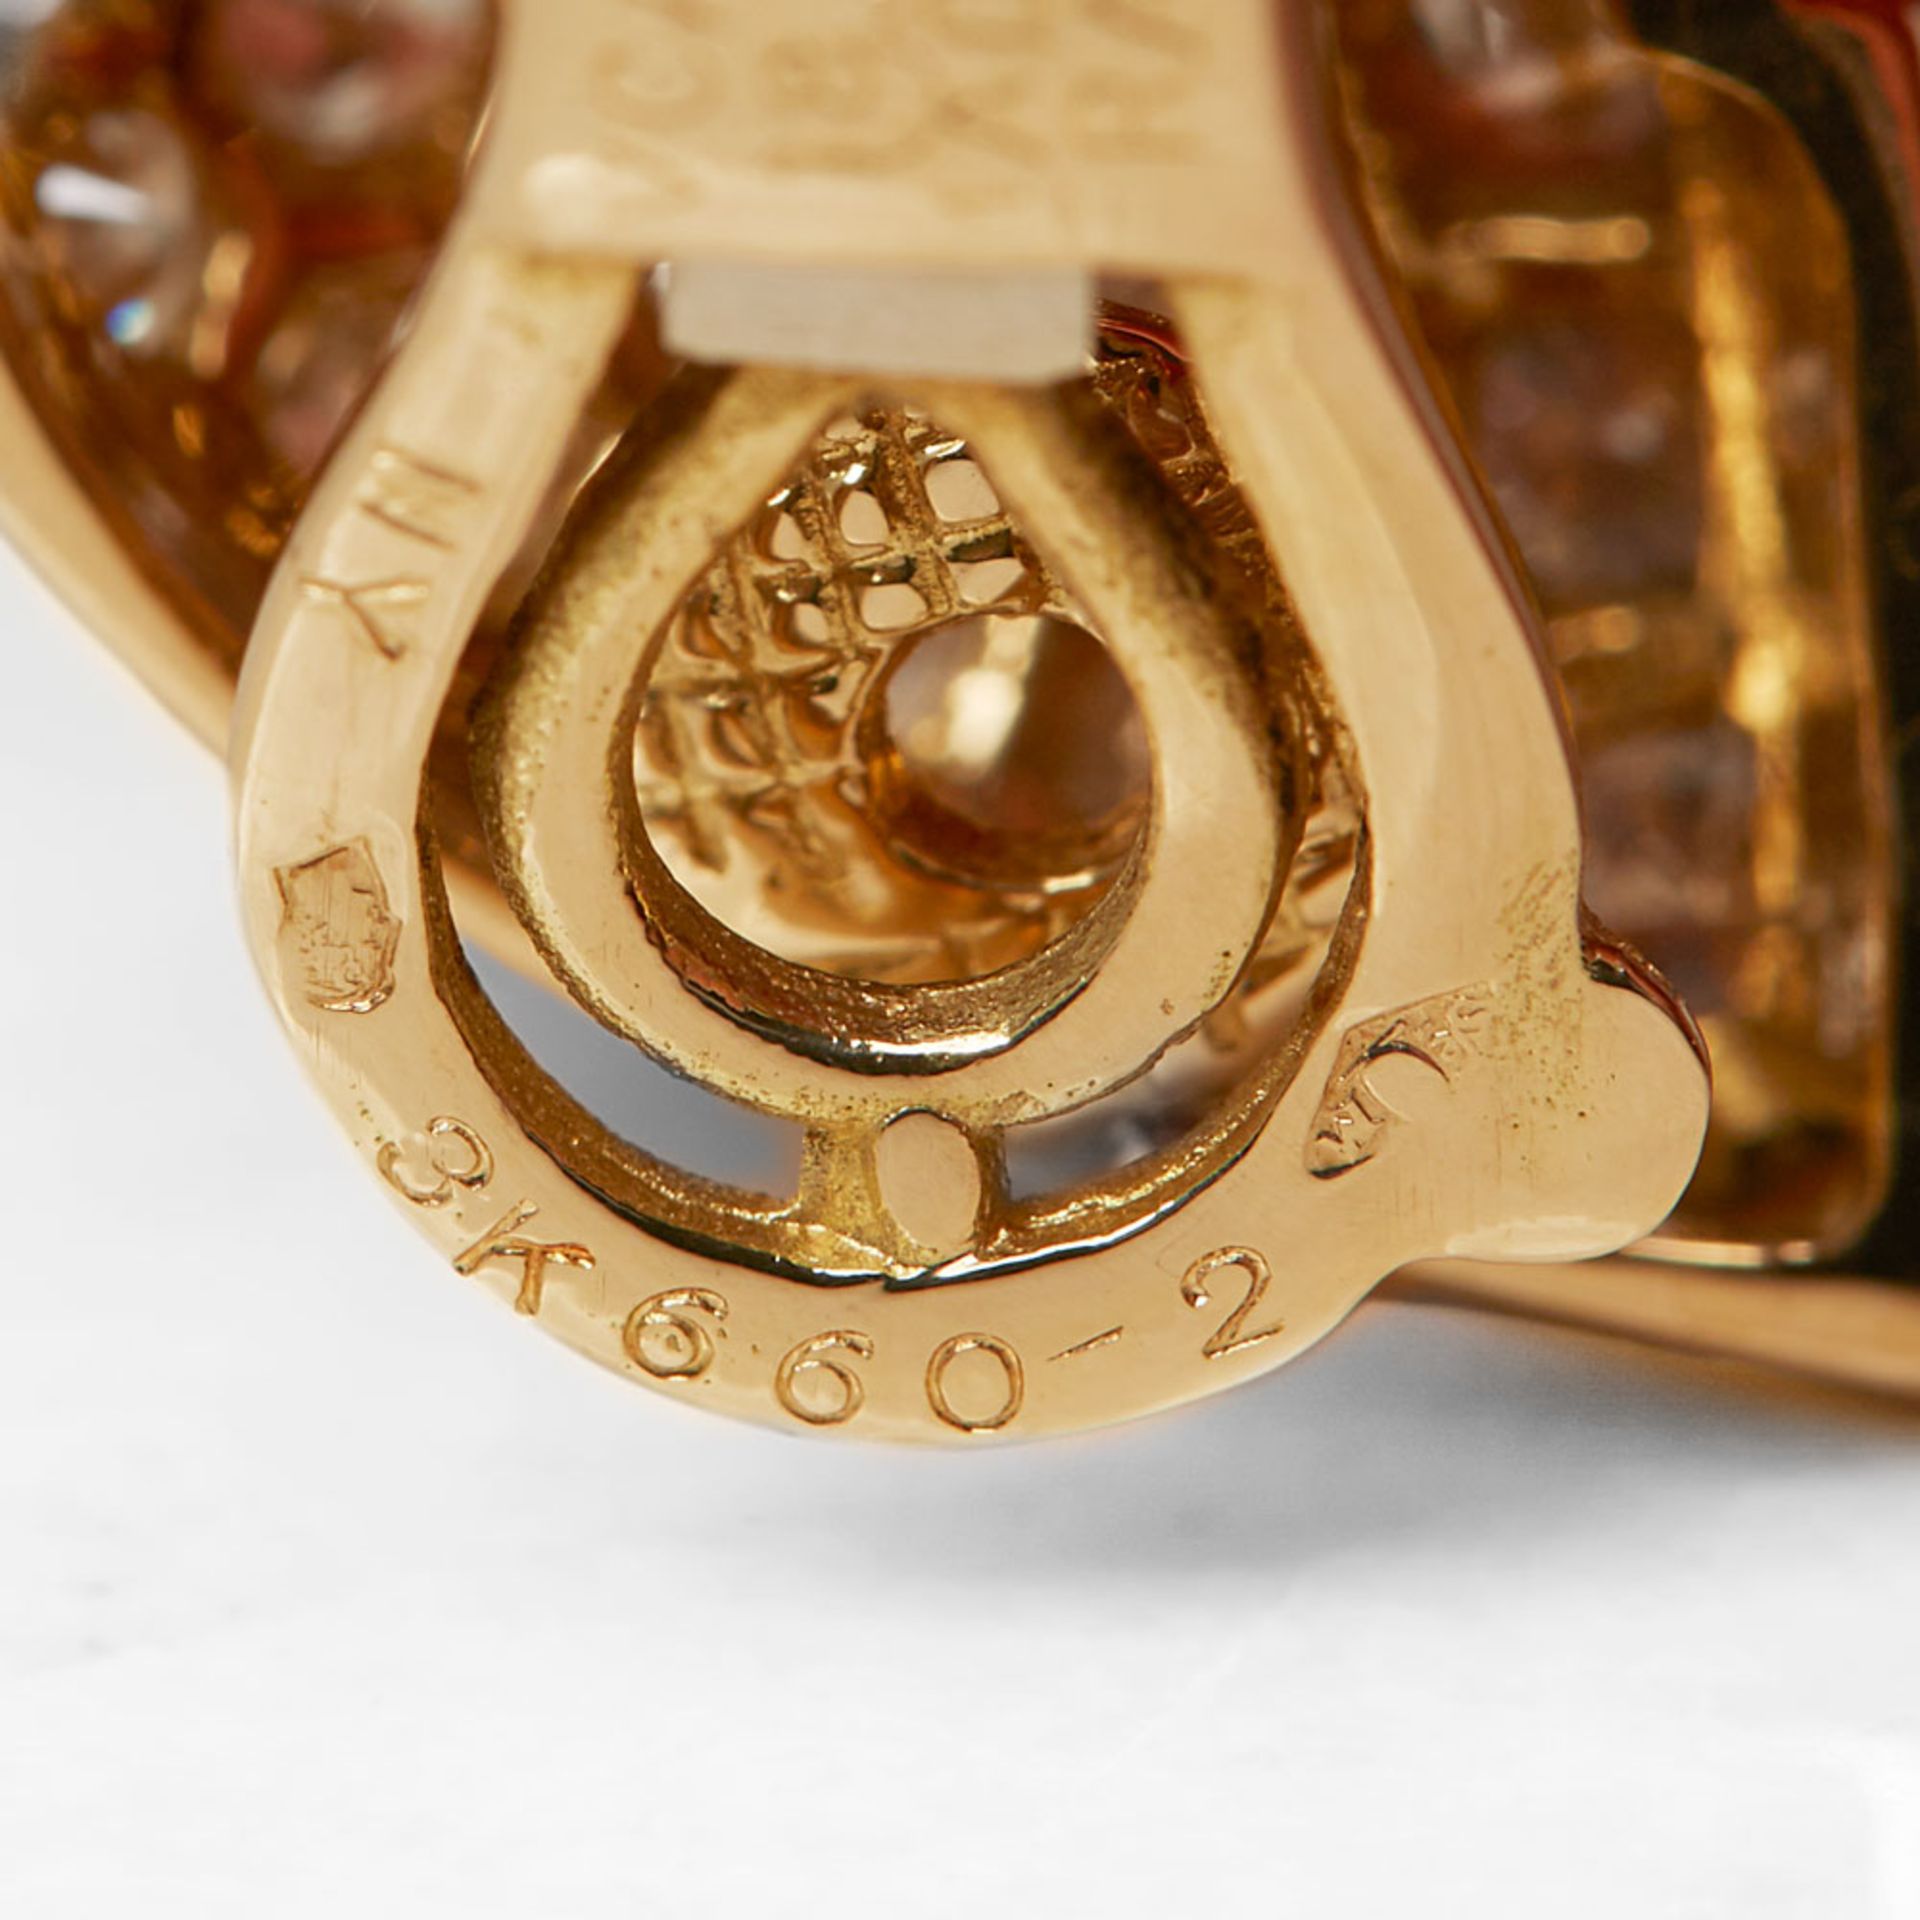 Van Cleef & Arpels 18k Yellow Gold Diamond Earrings - Image 7 of 7